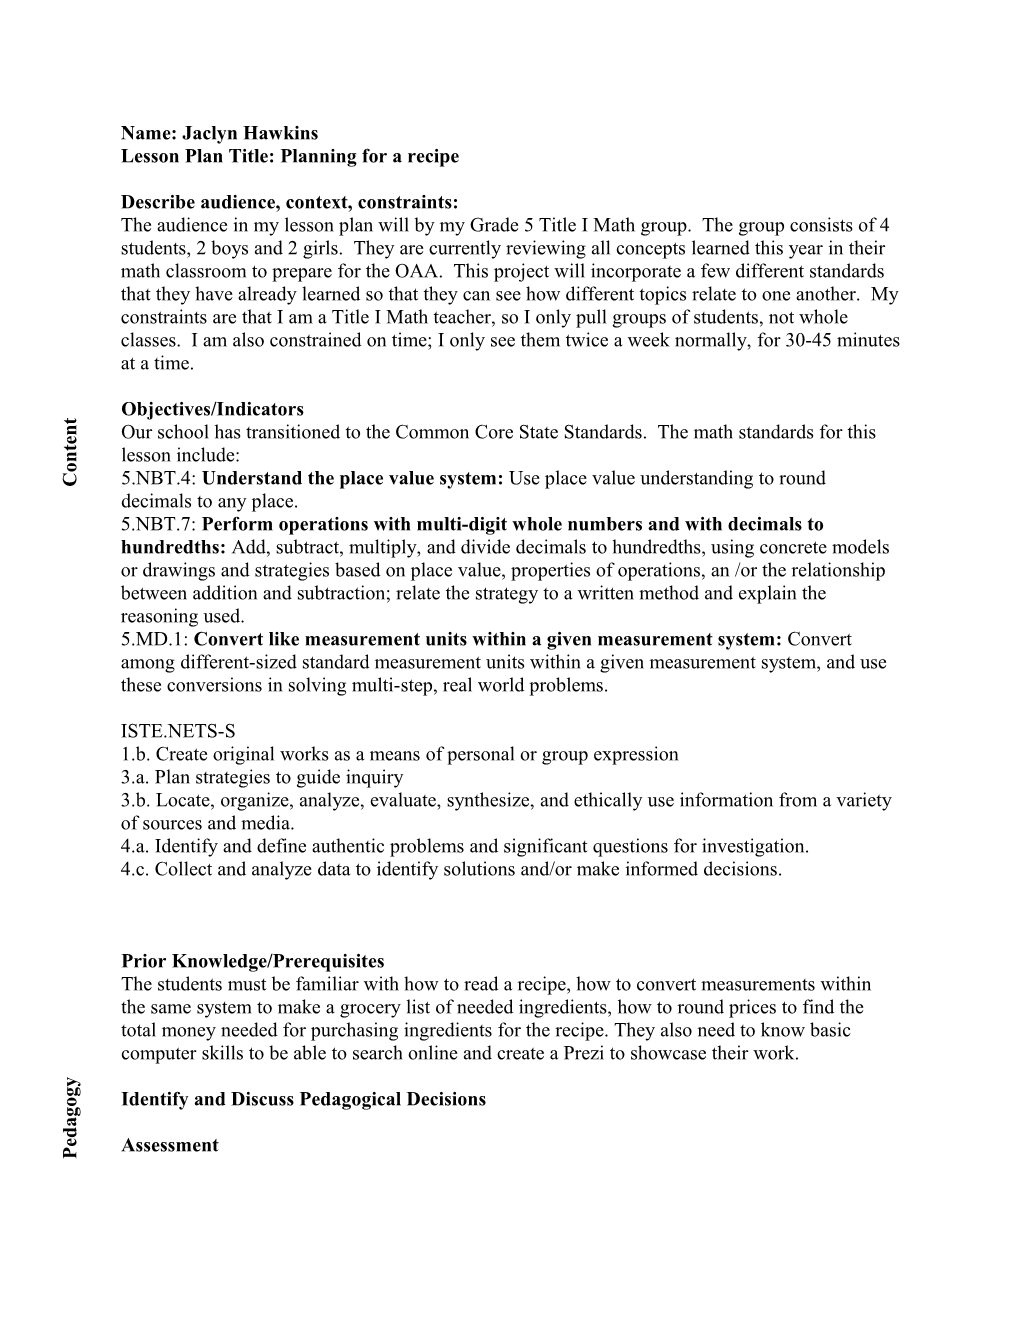 Backward Design TPACK Lesson Plan Model Development Worksheet